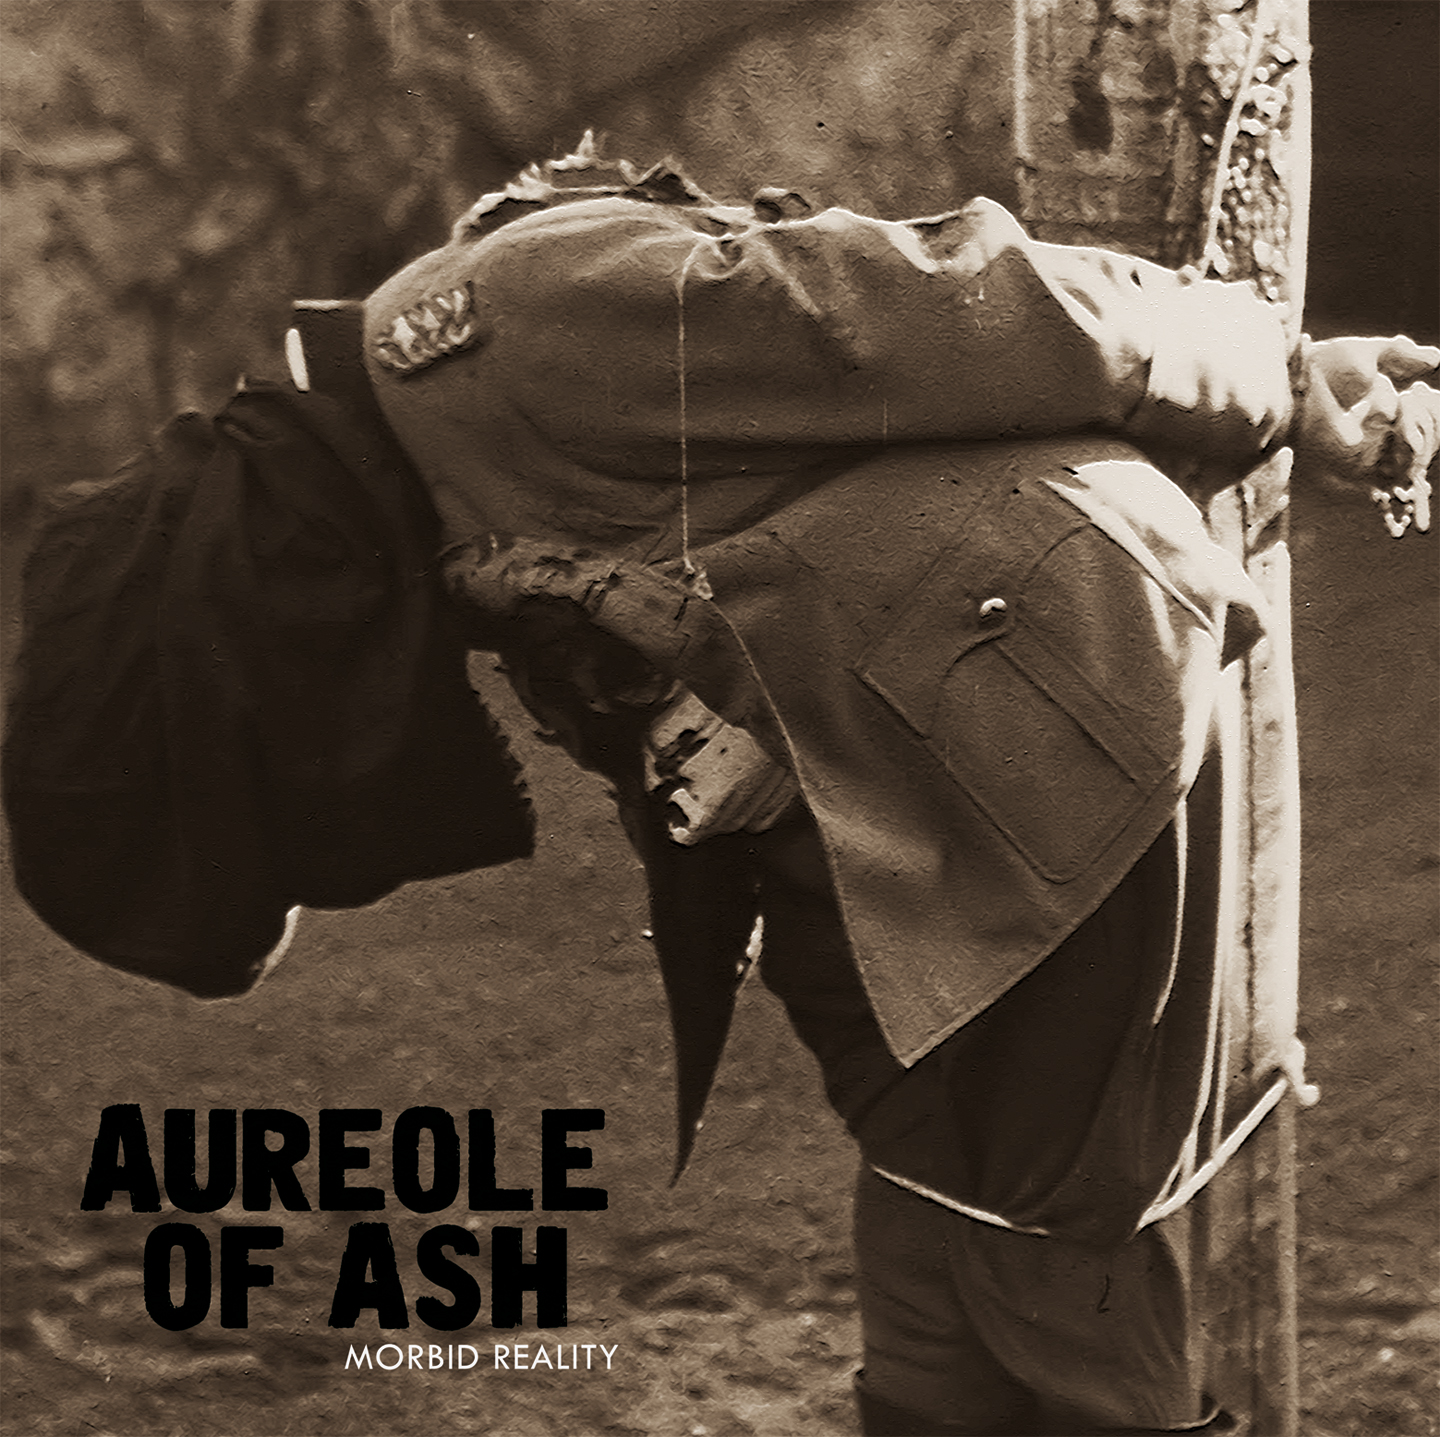 Aureole of Ash - Morbid Reality 10" - $10